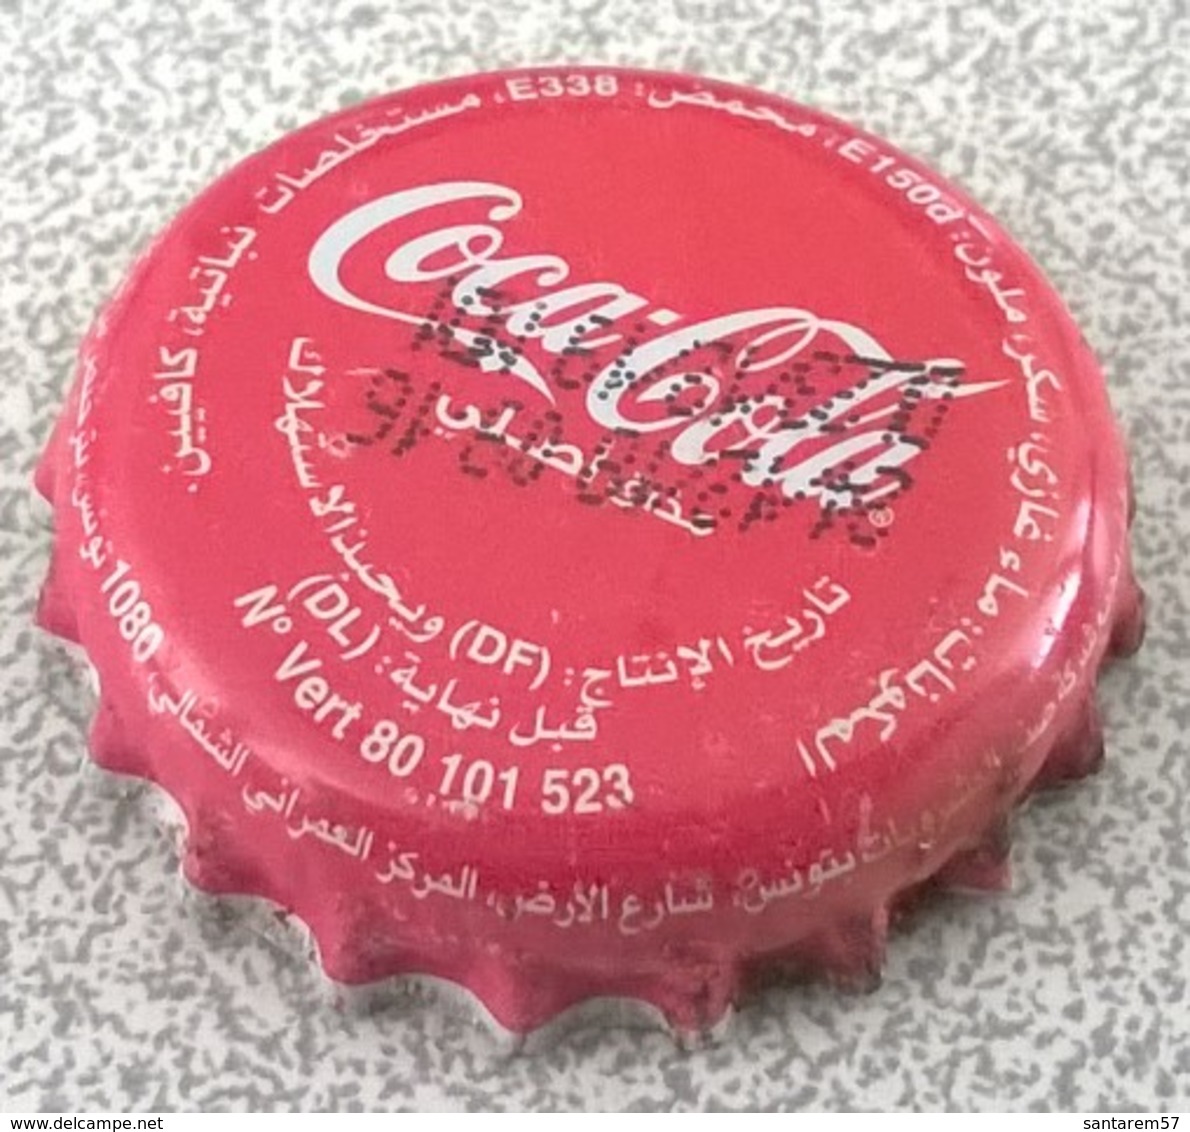 Tunisie Capsule Crown Caps Coca Cola SU - Soda